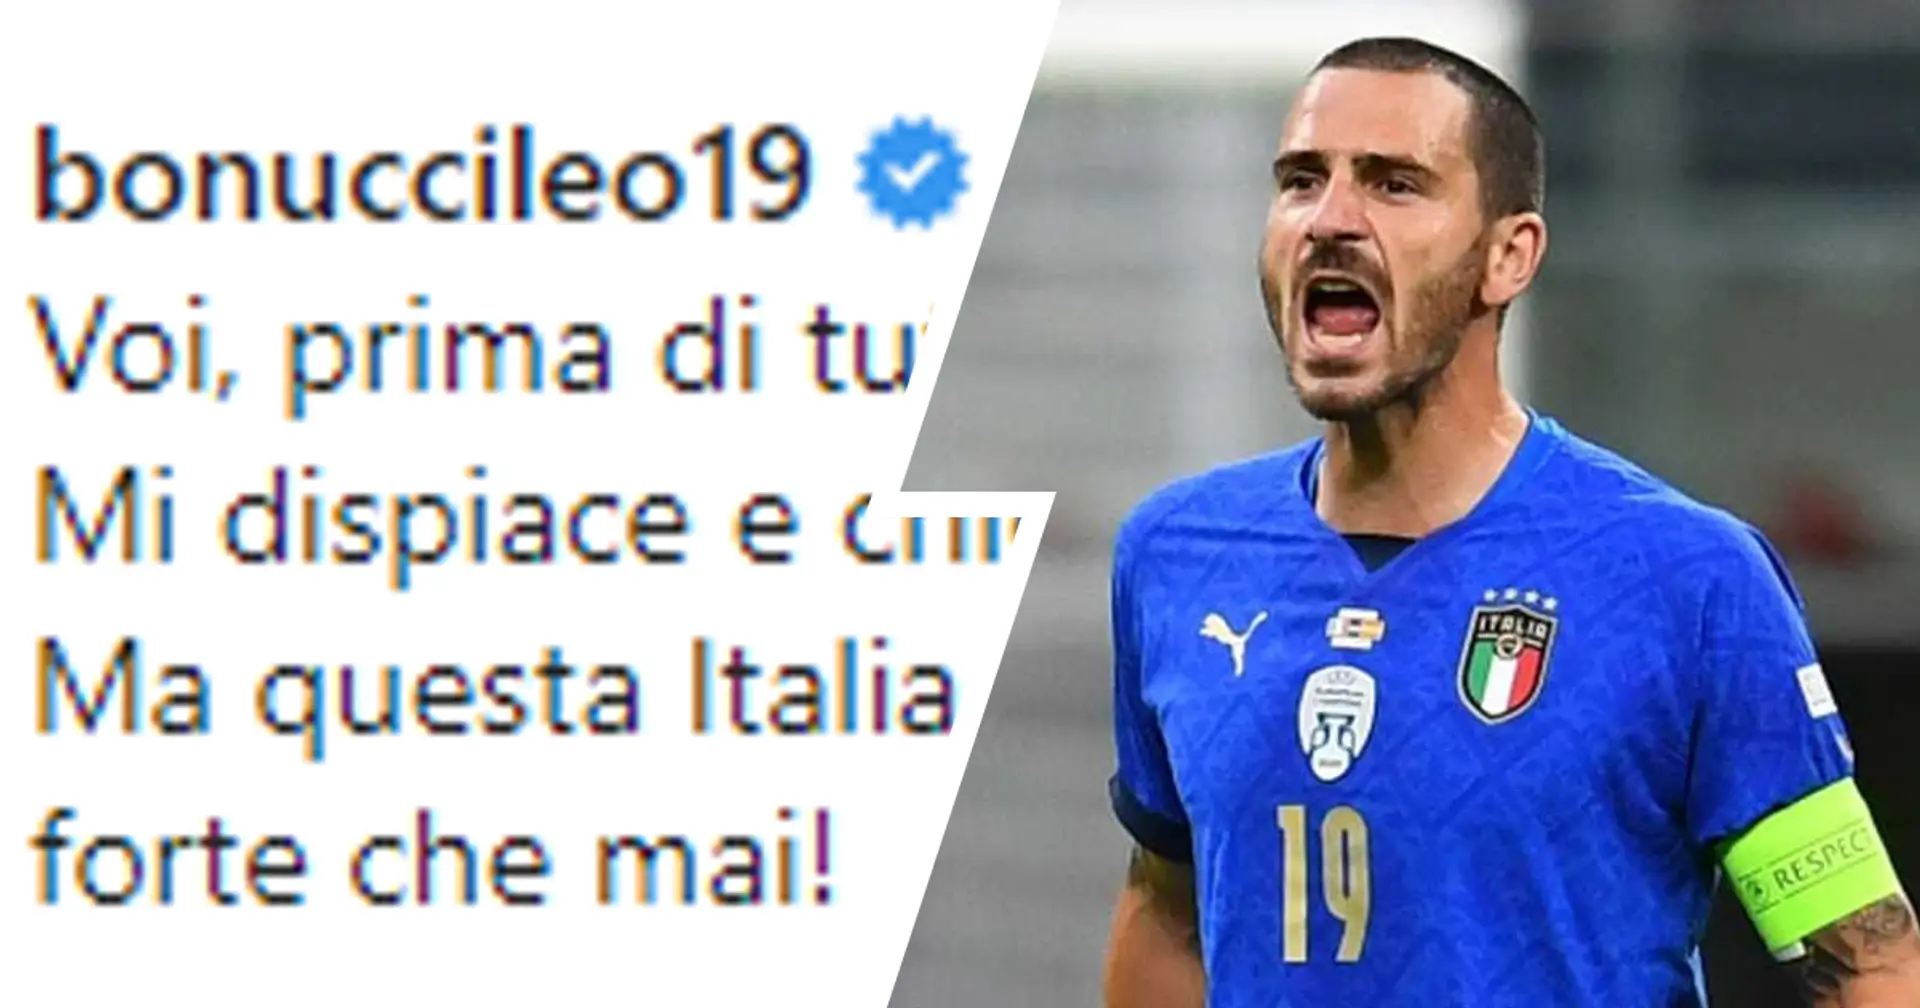 "Mi dispiace e chiedo scusa!": Bonucci fa mea culpa sui social dopo il rosso costato cara all'Italia contro la Spagna